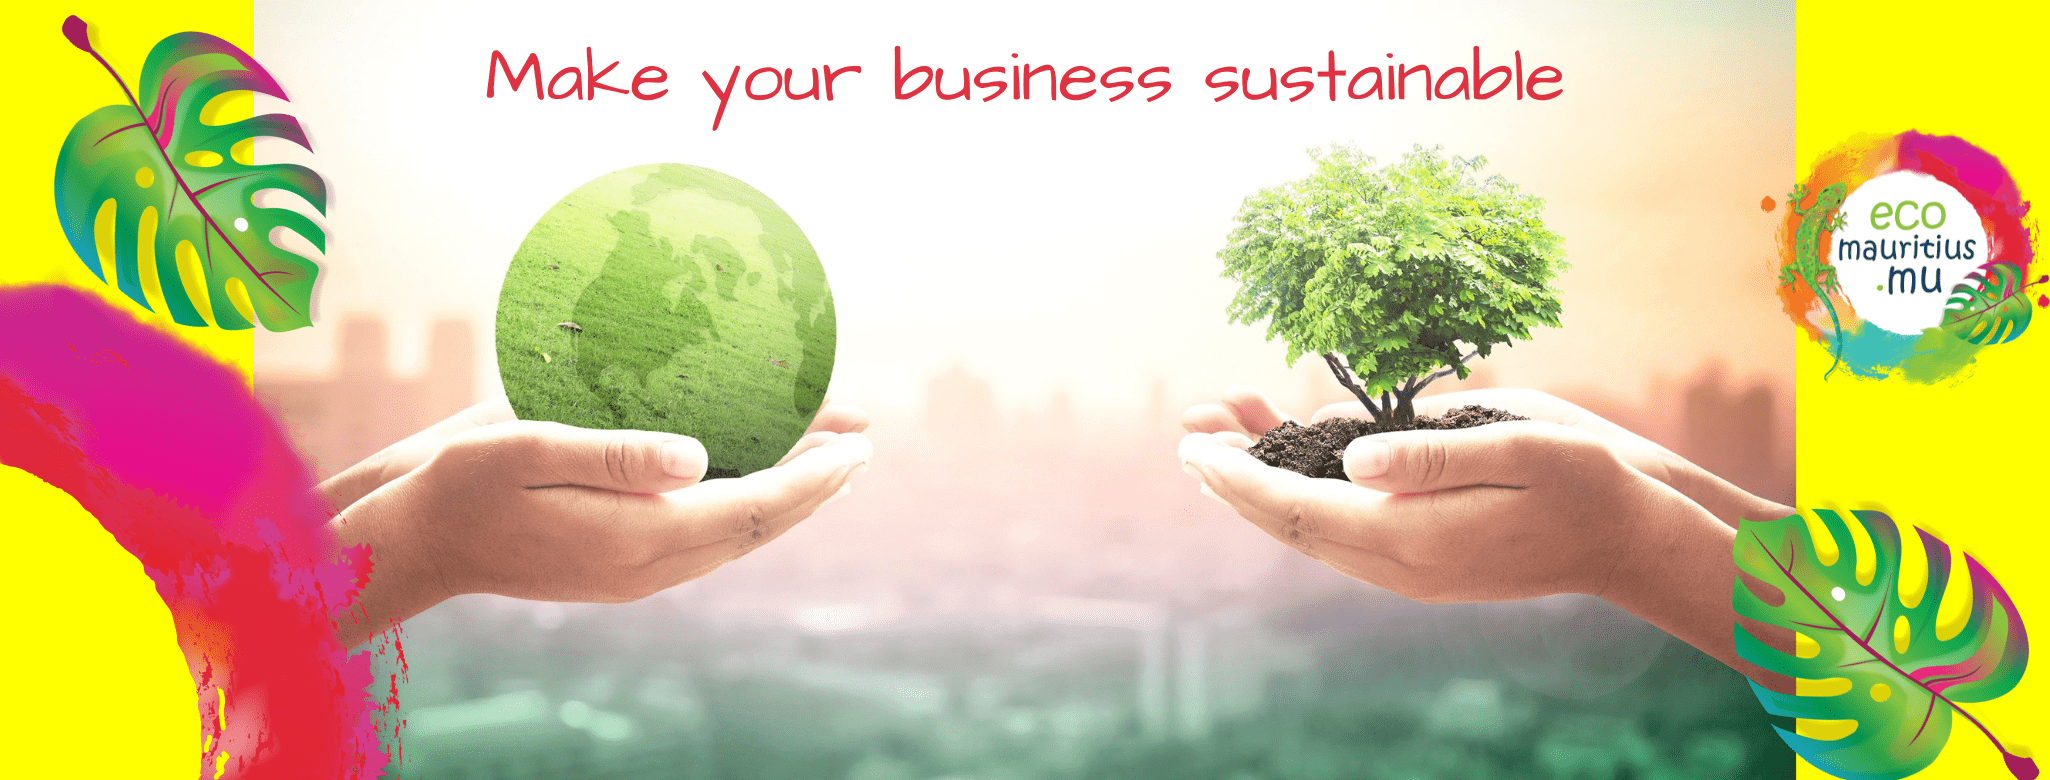 sustainable businesses ecomauritius.mu